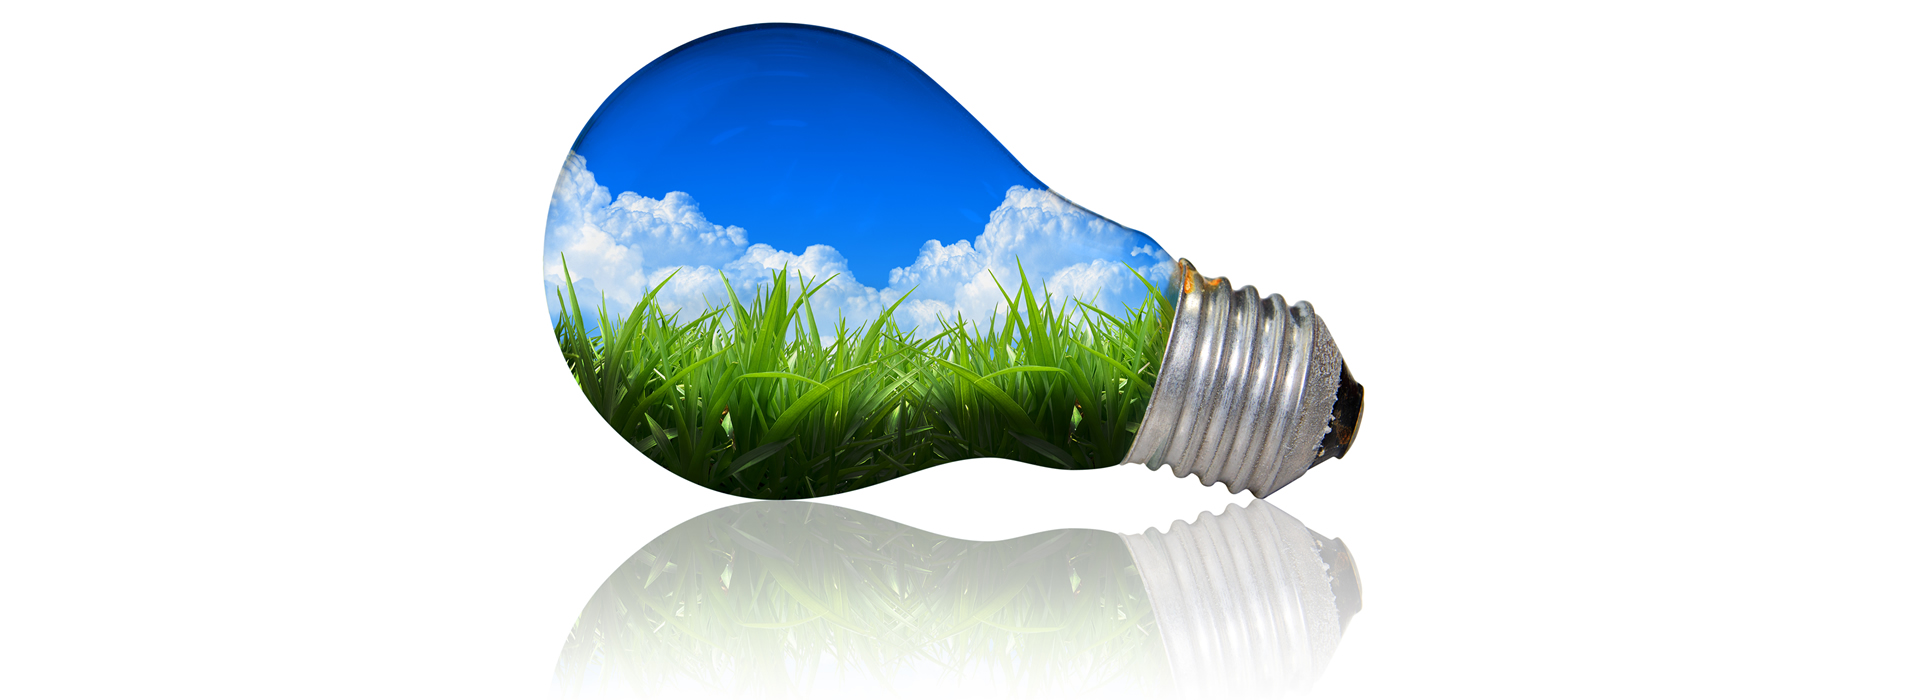 lightbulb clean energy